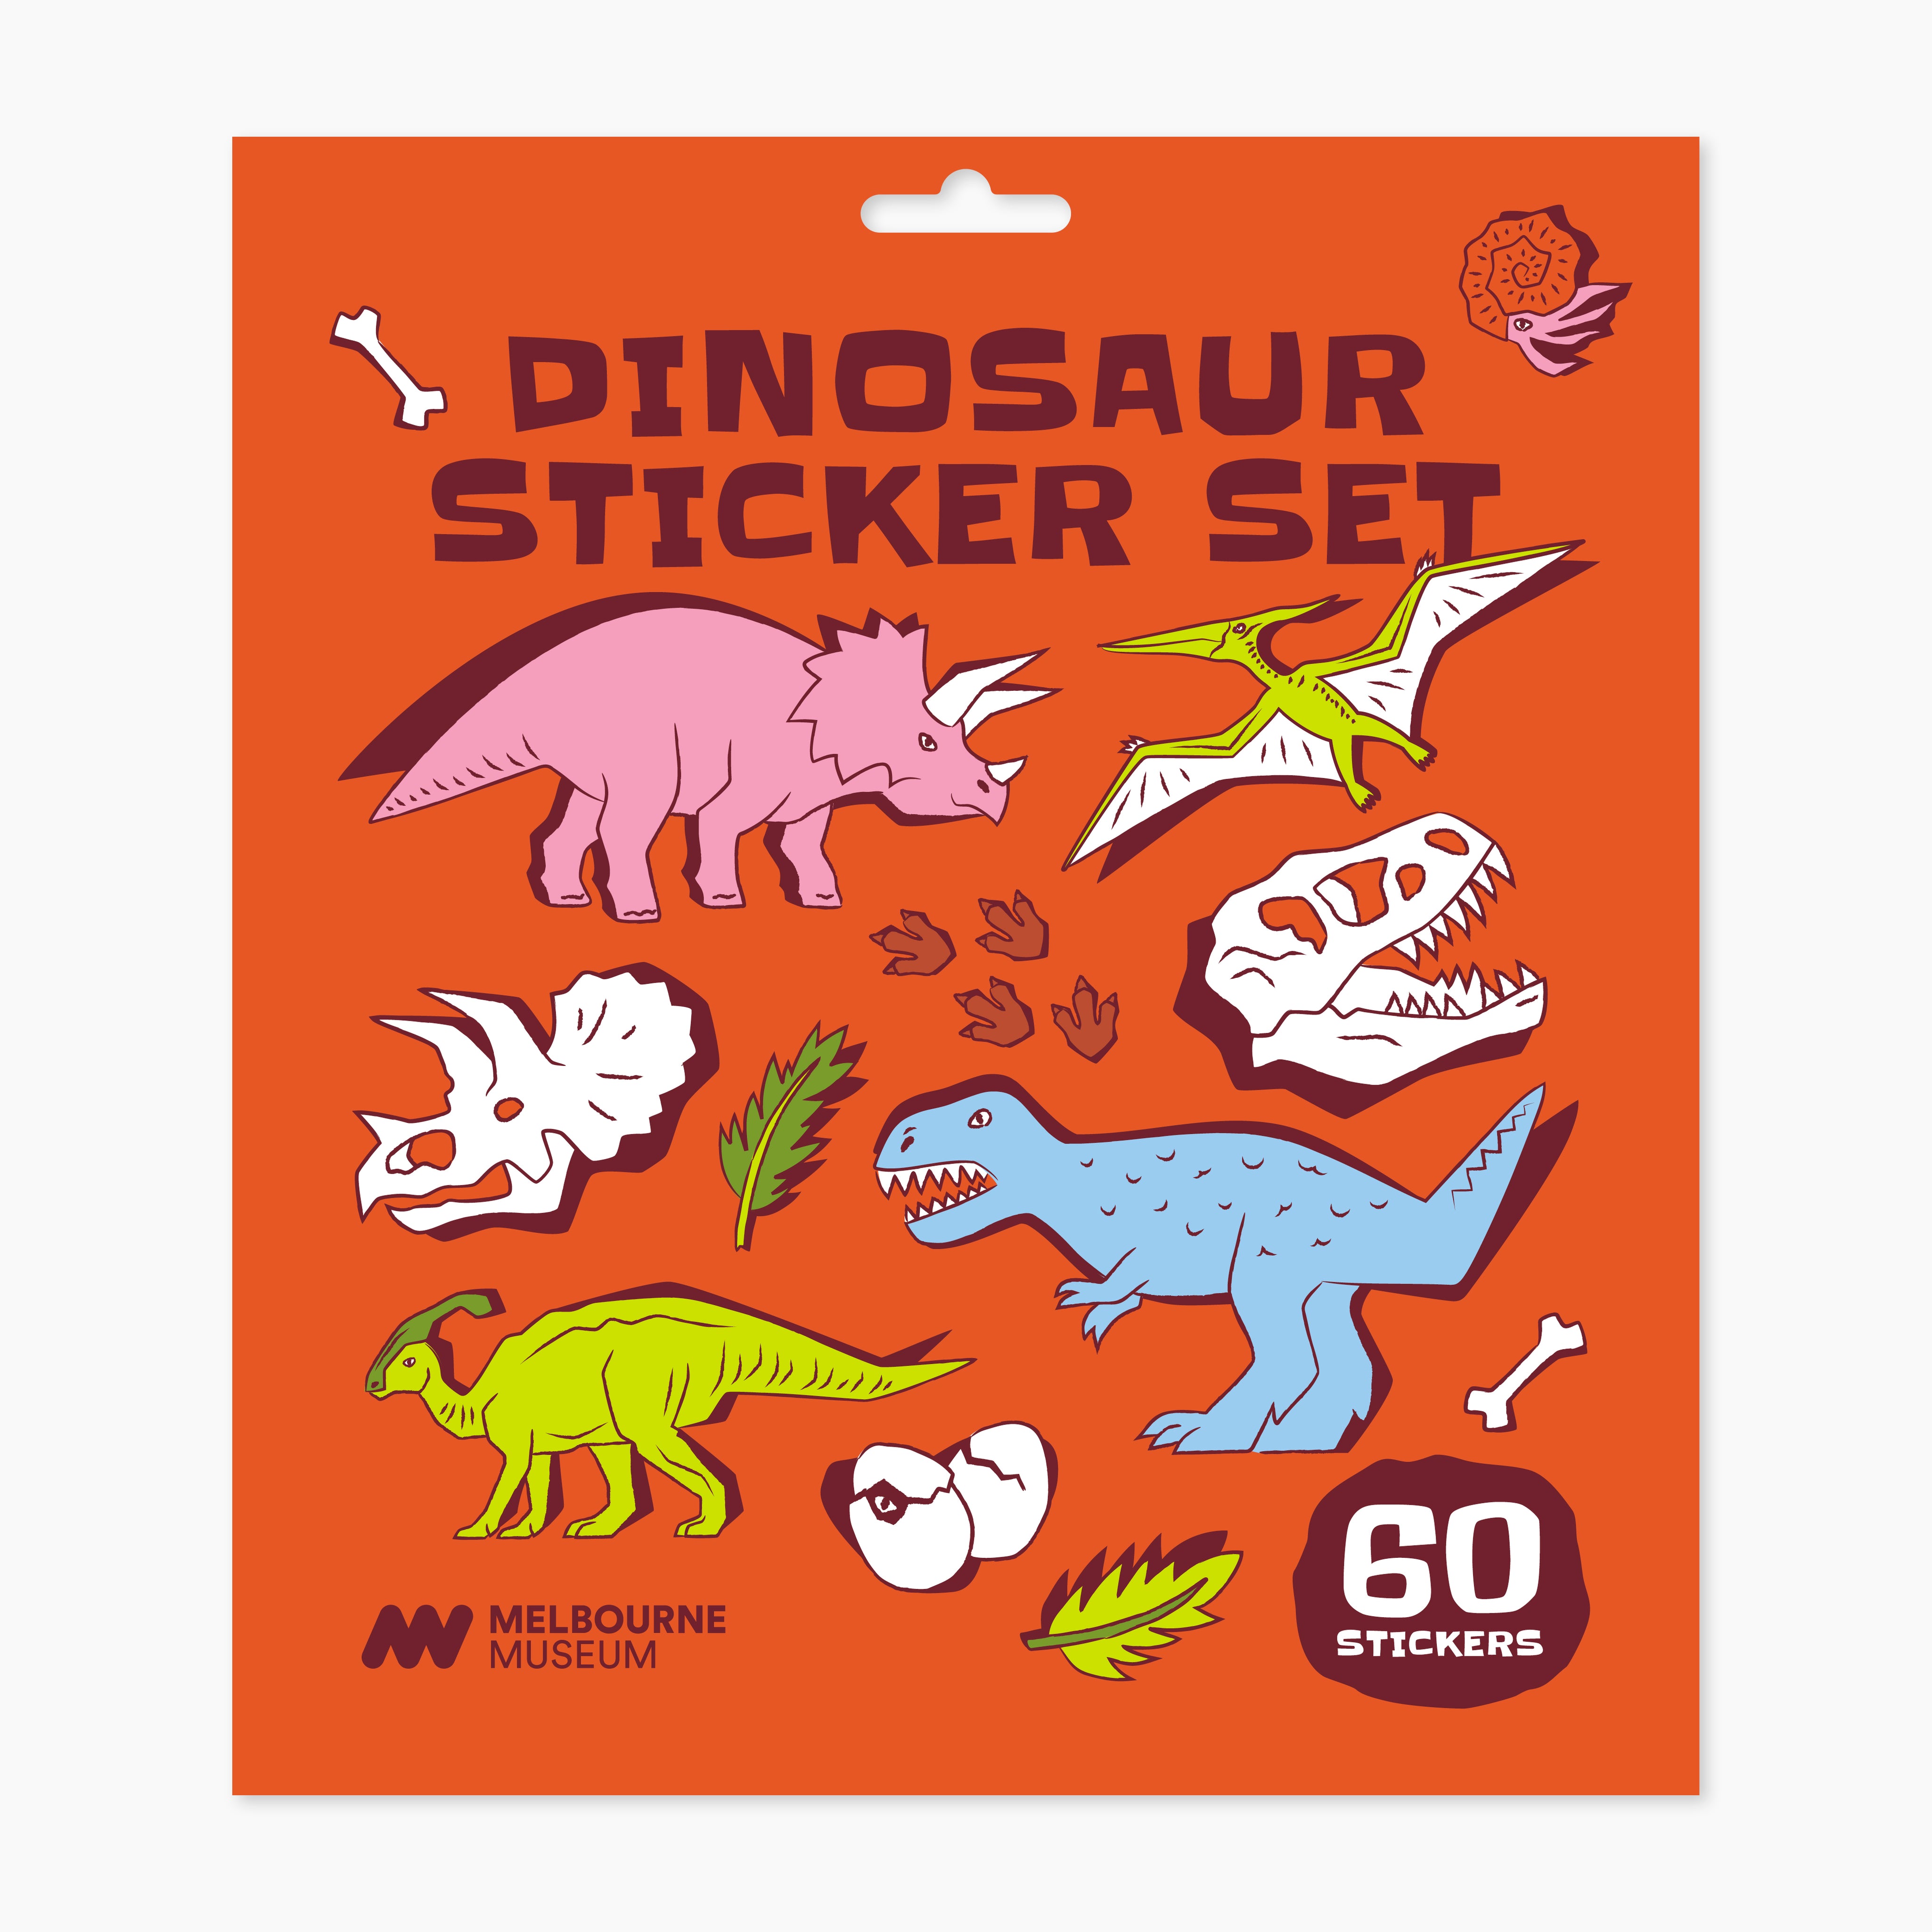 Home of Dinos Sticker Set